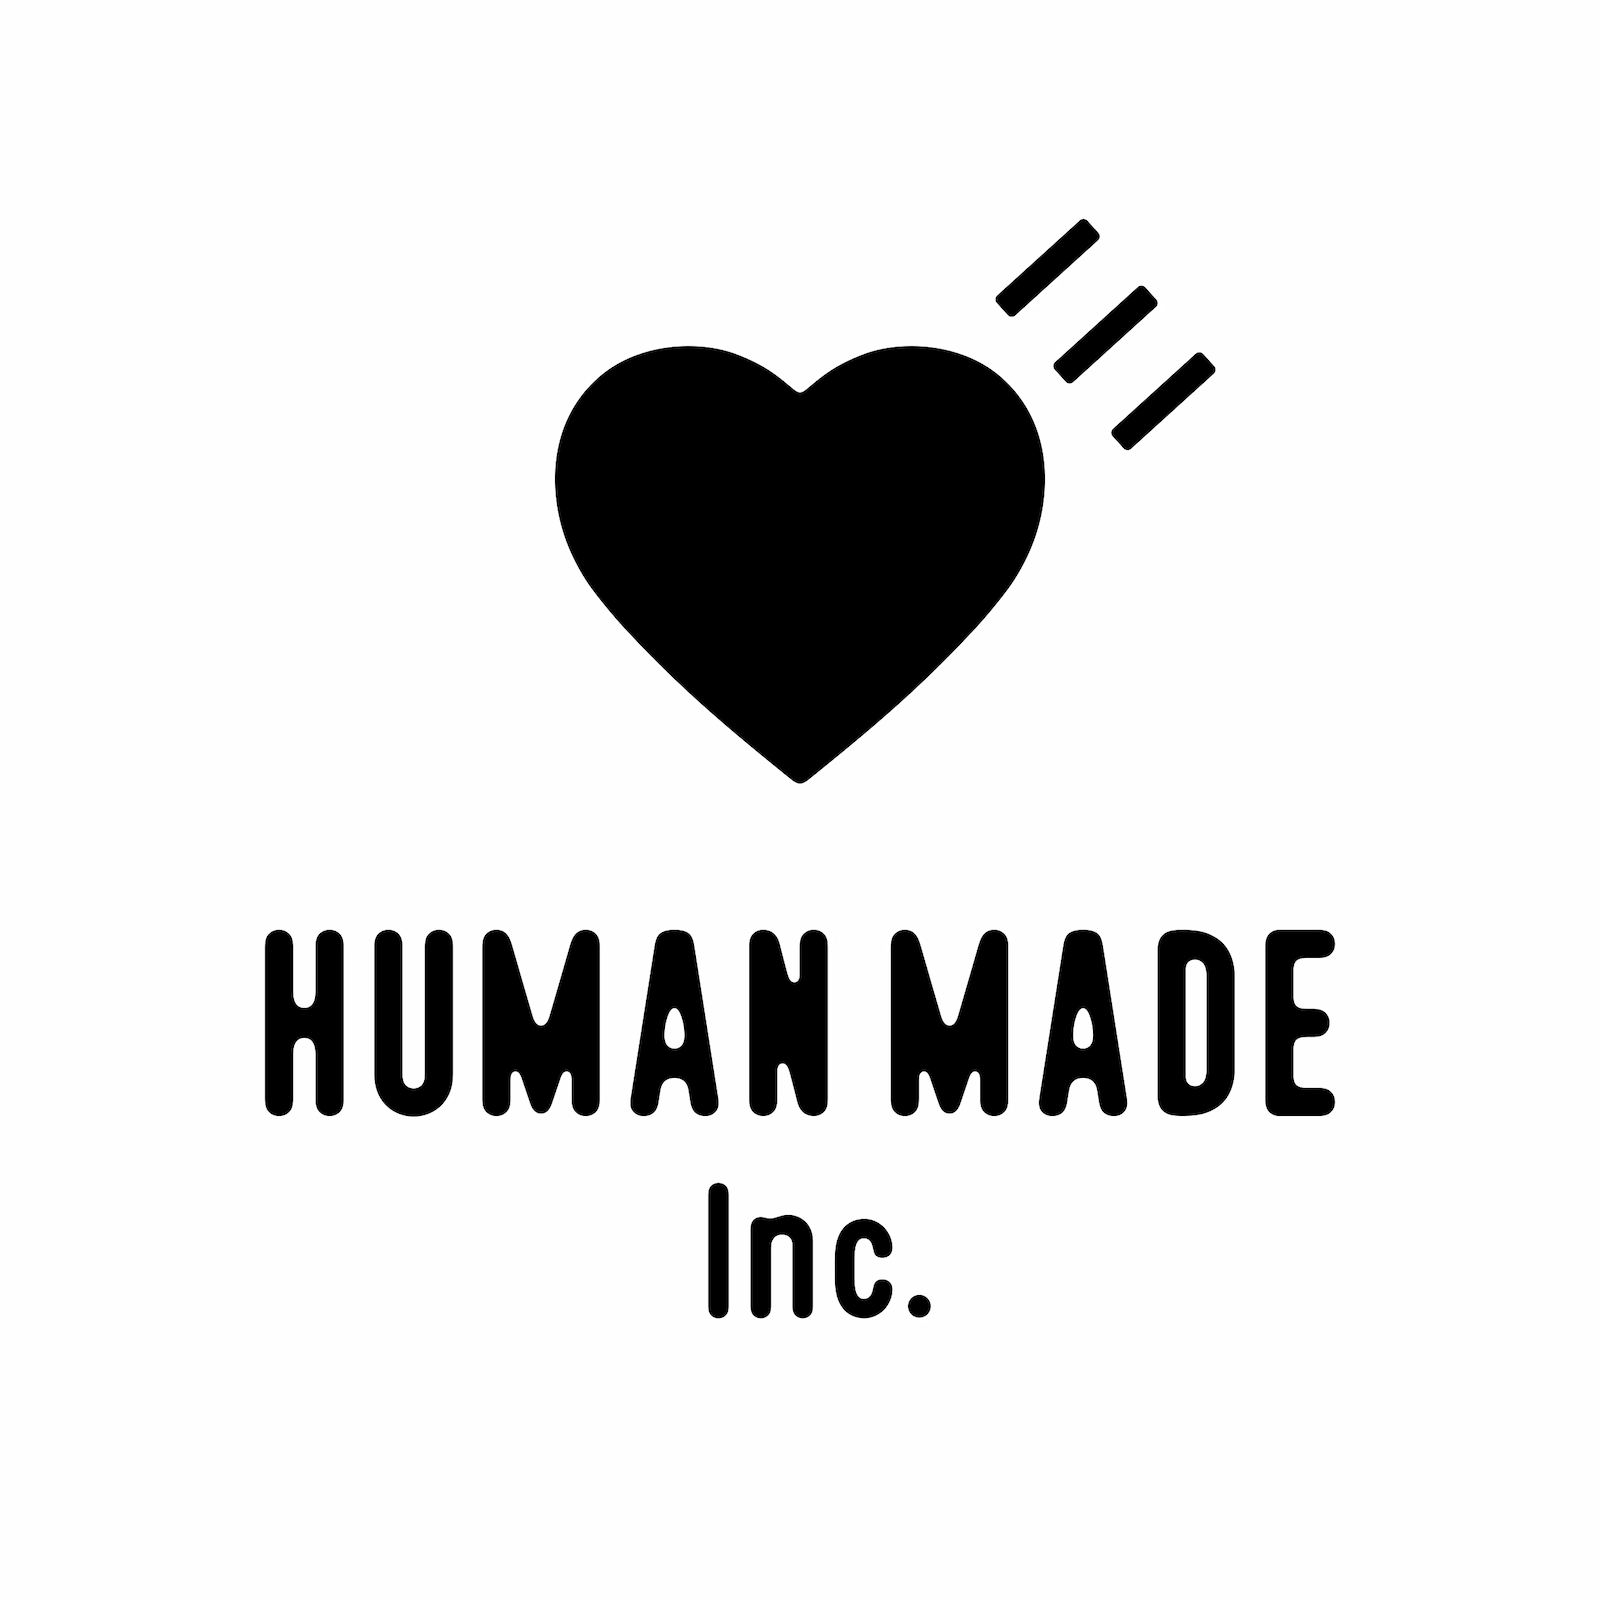 オツモ株式会社が「HUMAN MADE株式会社」に社名を変更